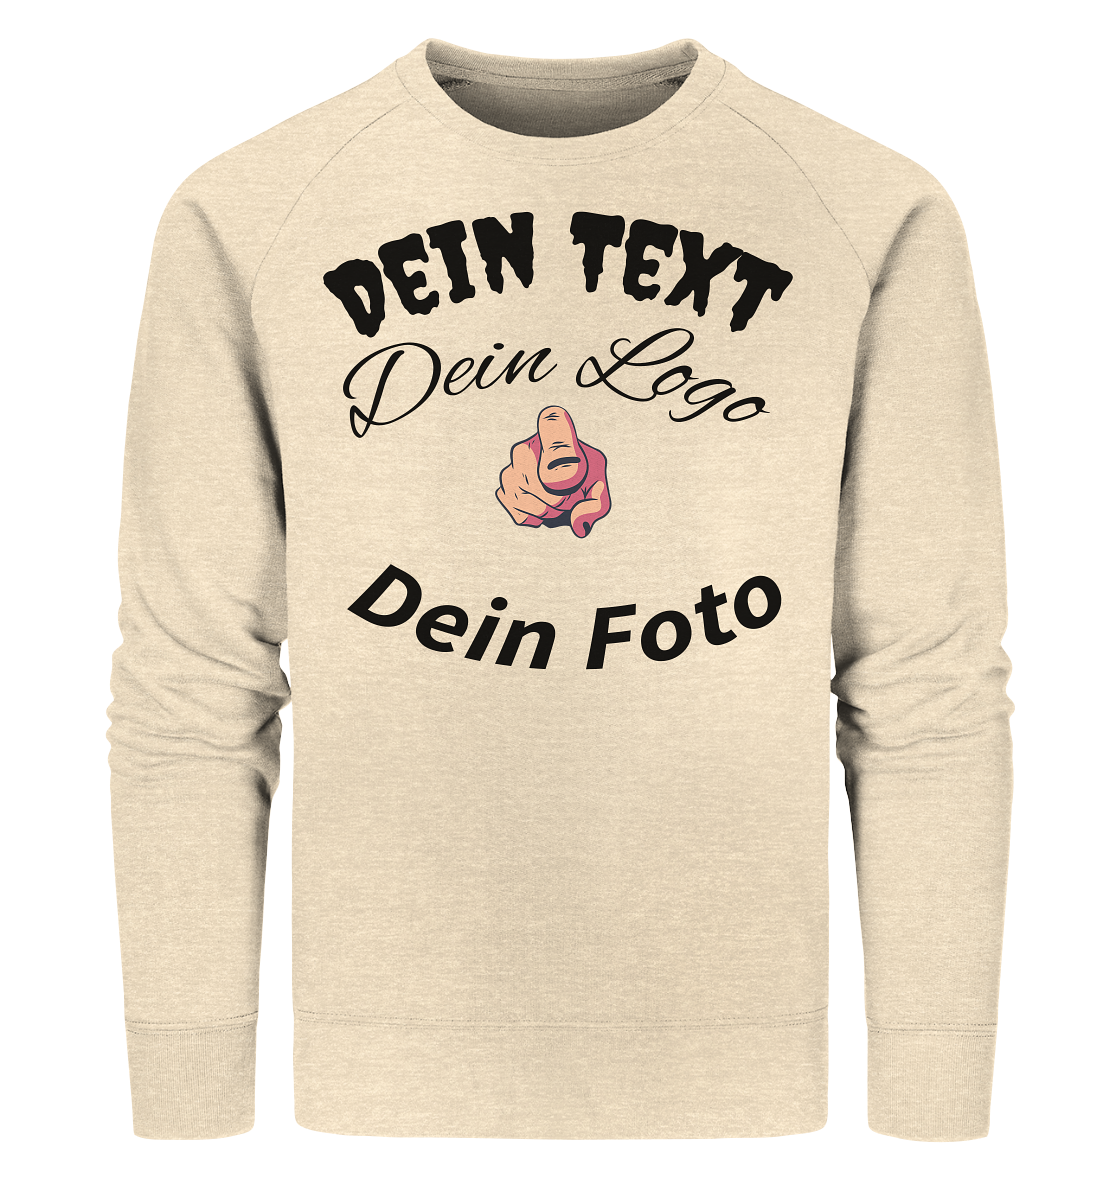 Dein Text ,Dein Logo,Dein Foto , Wunsch Design zum selbst gestalten - Organic Sweatshirt